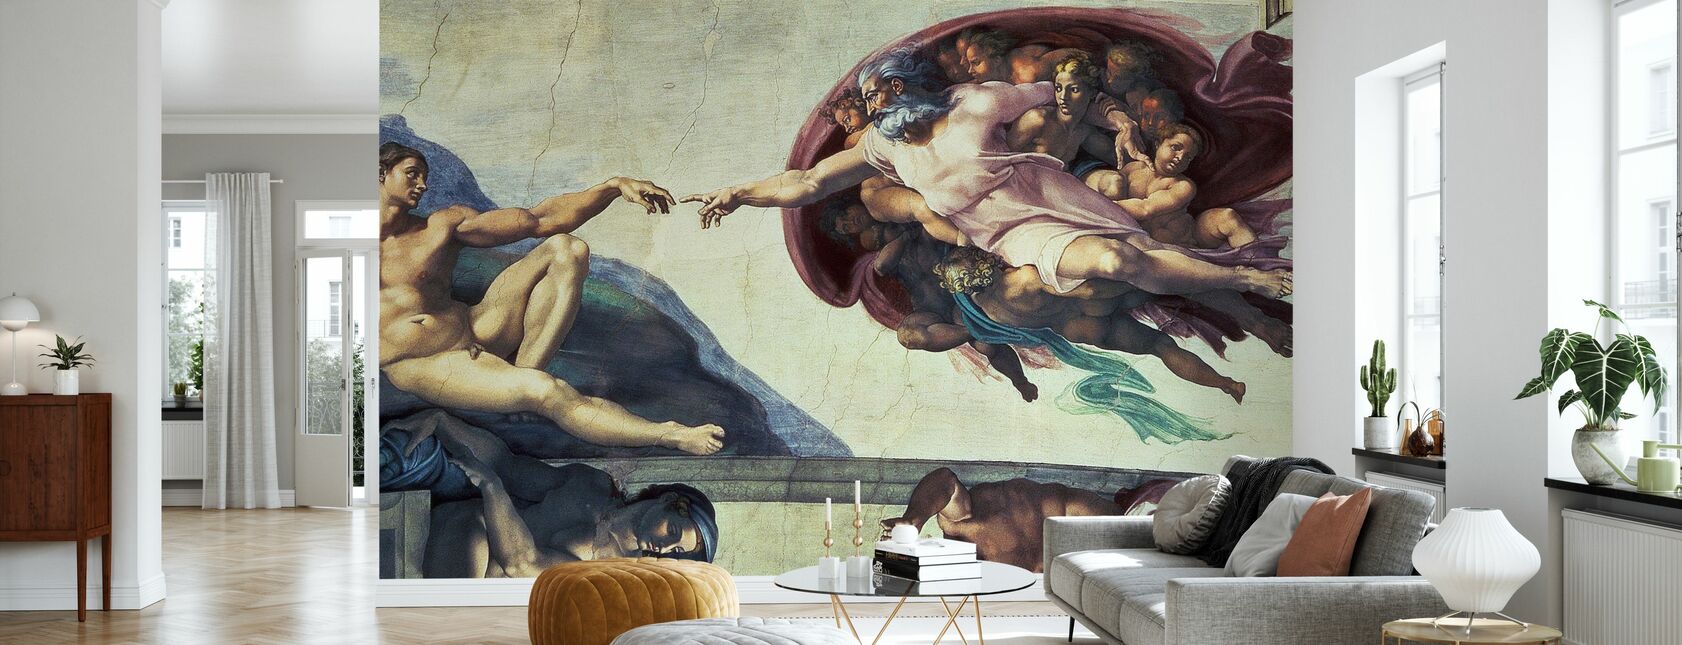 Erschaffung von Adam - Michelangelo Buonarroti - Tapete - Wohnzimmer